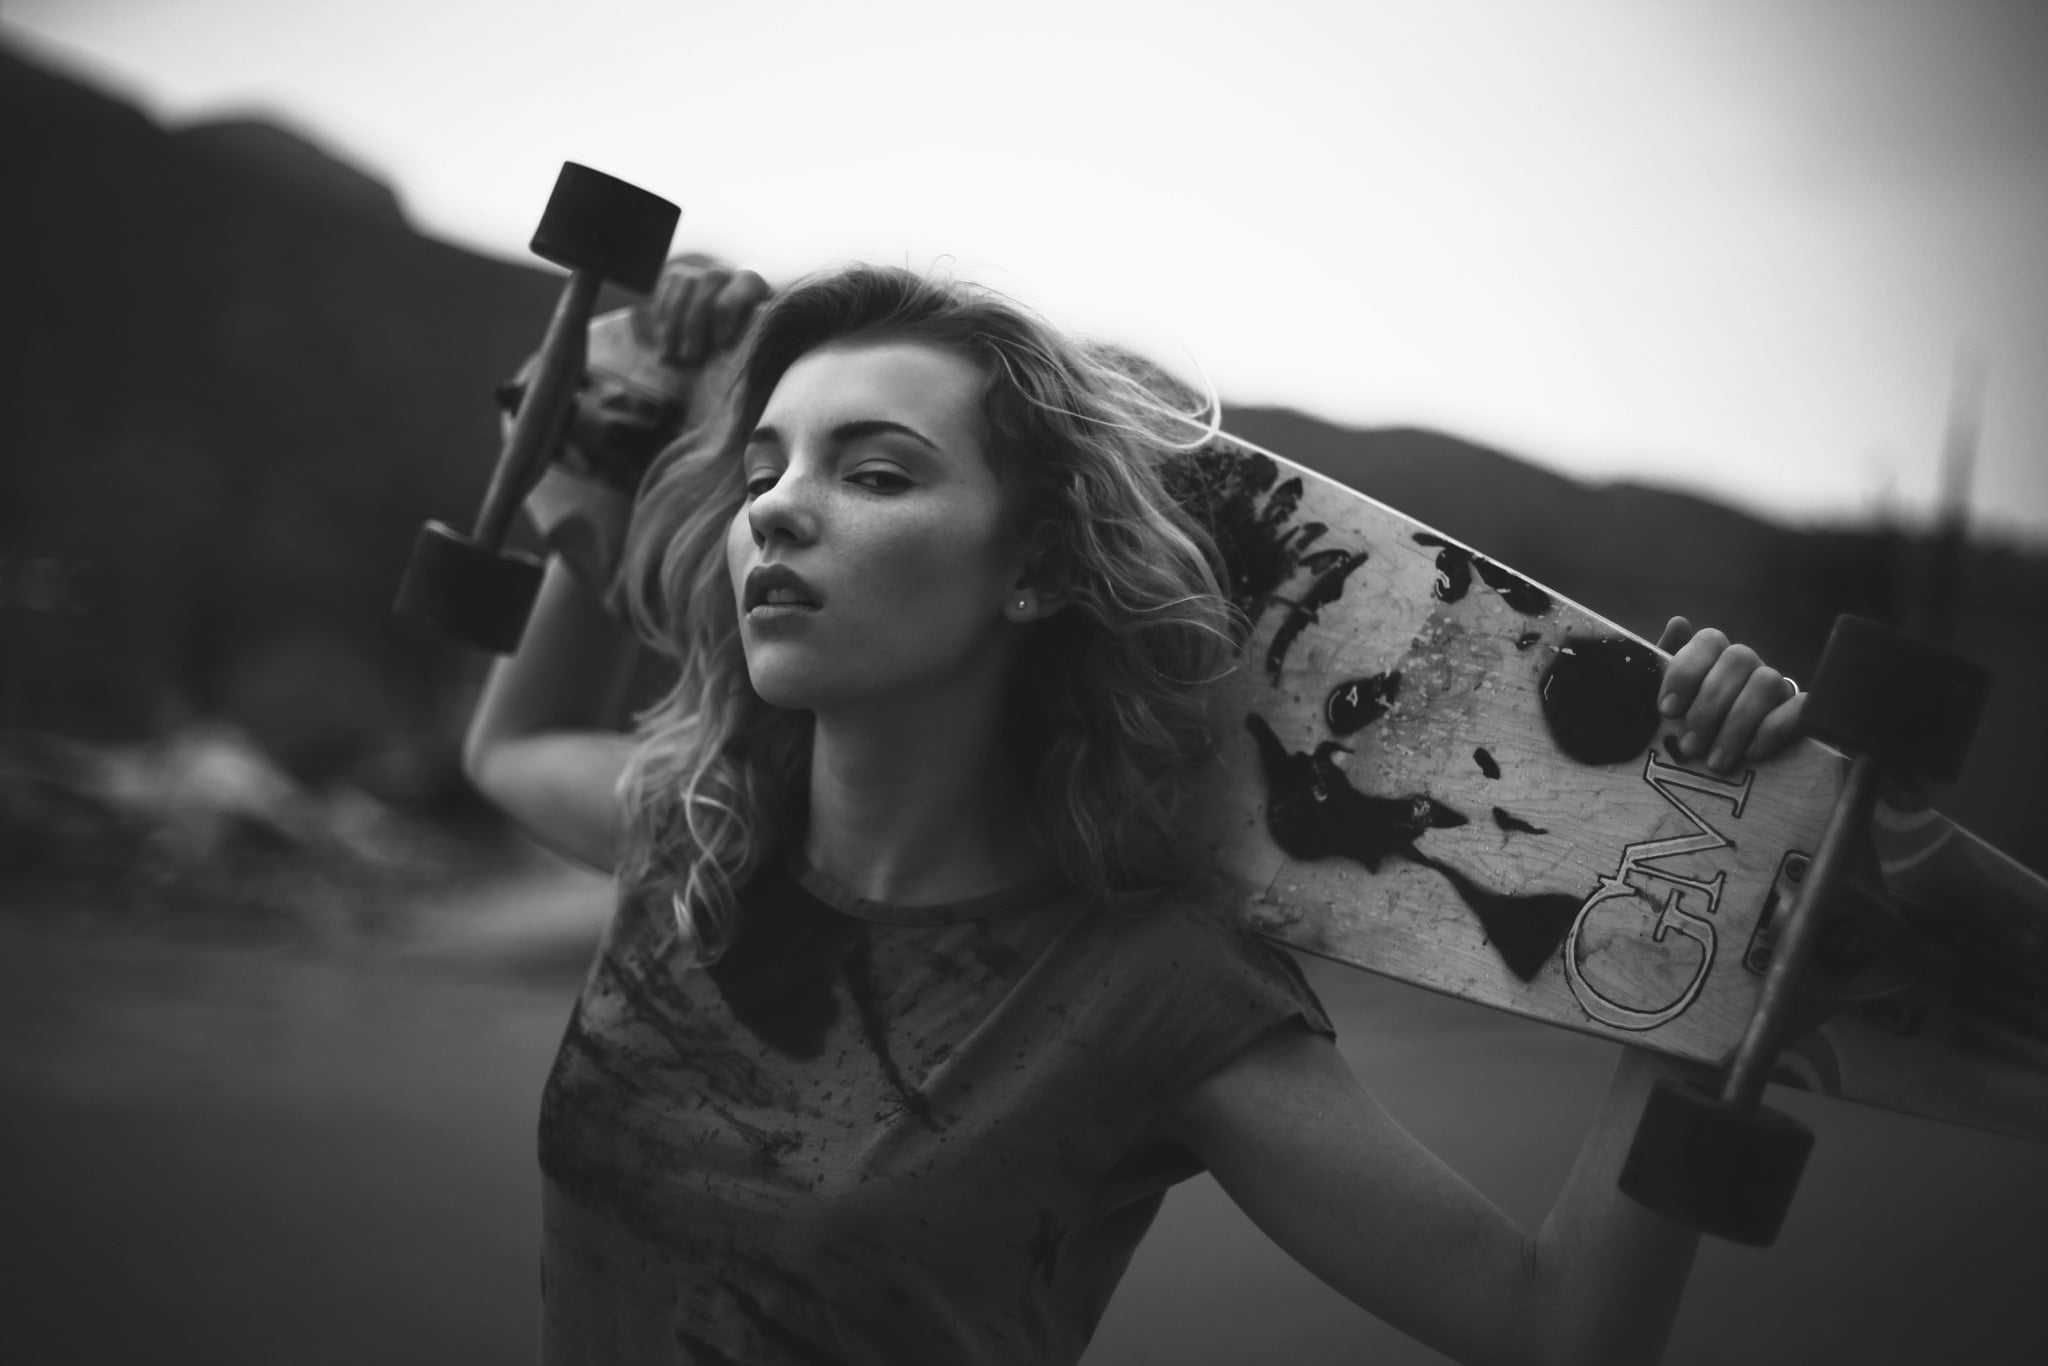 Russian women, urban, longboard, monochrome, skateboard, T-shirt